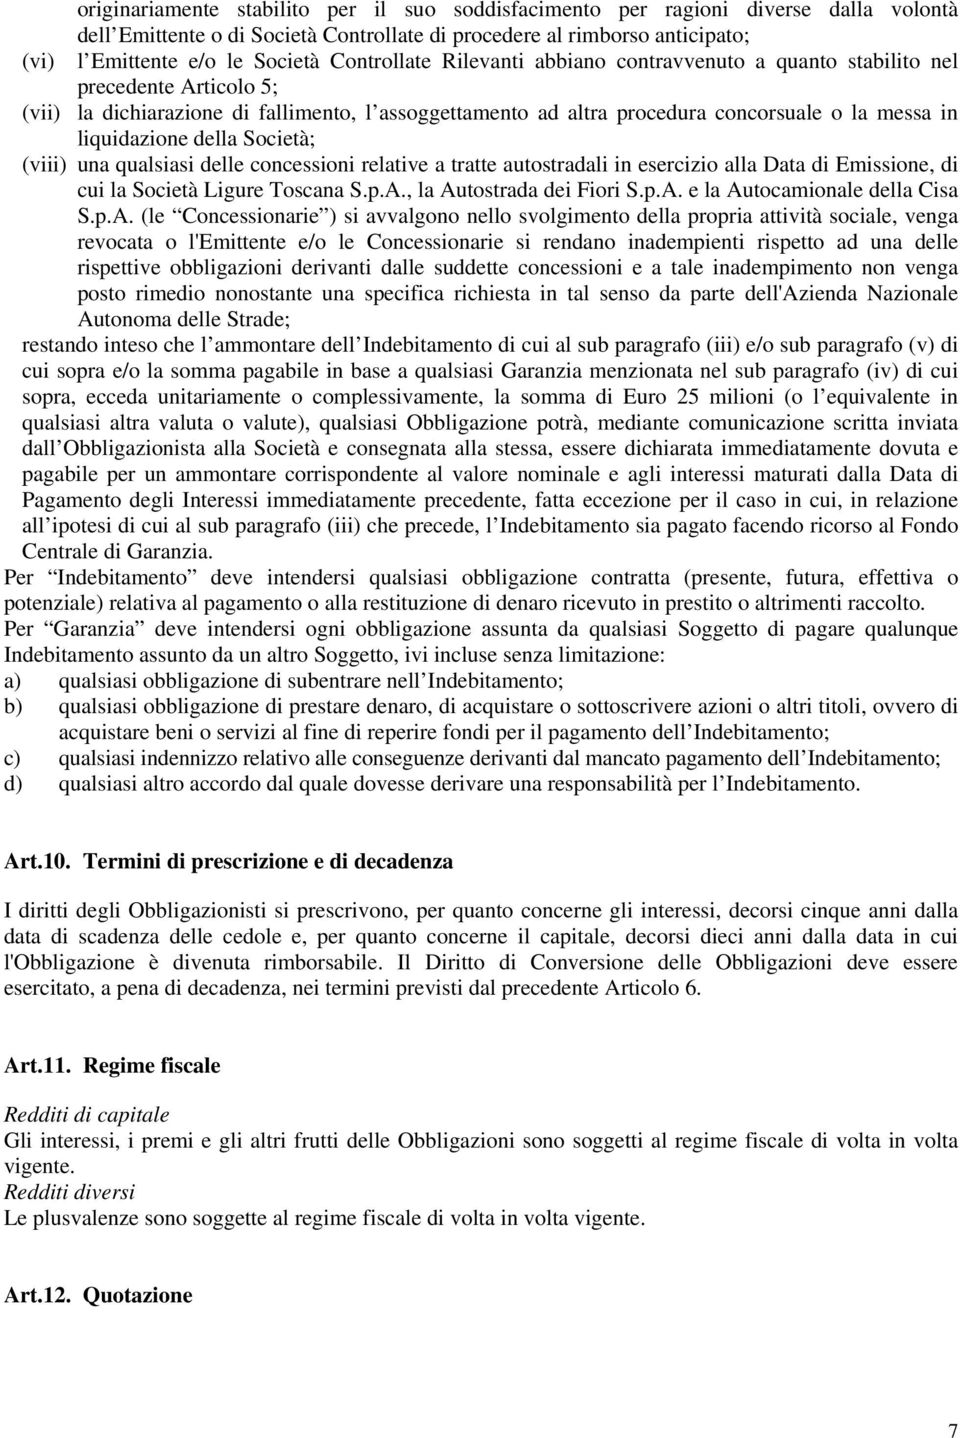 liquidazione della Società; (viii) una qualsiasi delle concessioni relative a tratte autostradali in esercizio alla Data di Emissione, di cui la Società Ligure Toscana S.p.A.